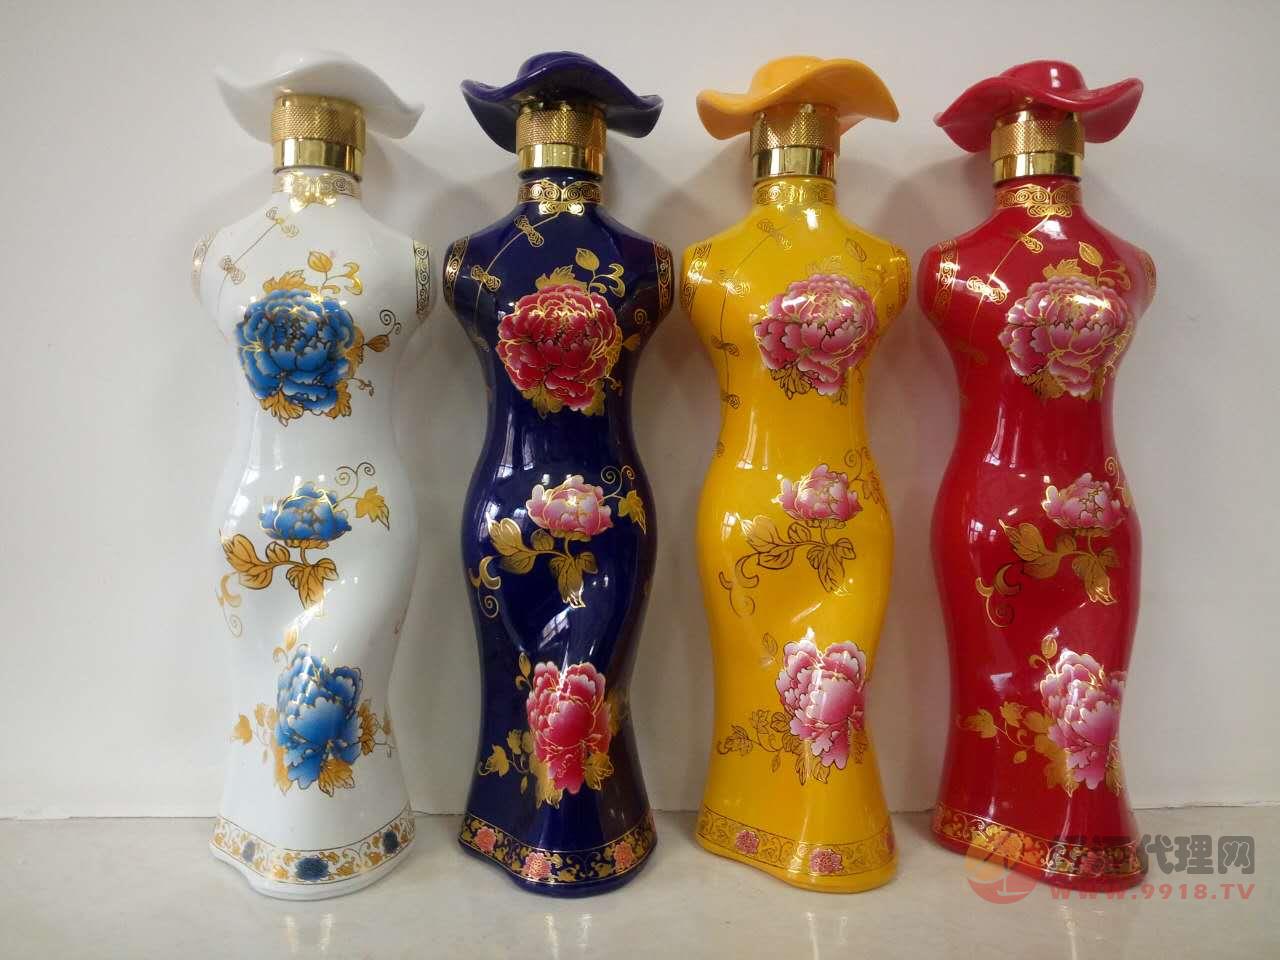 八里坊系列---旗袍酒瓶装